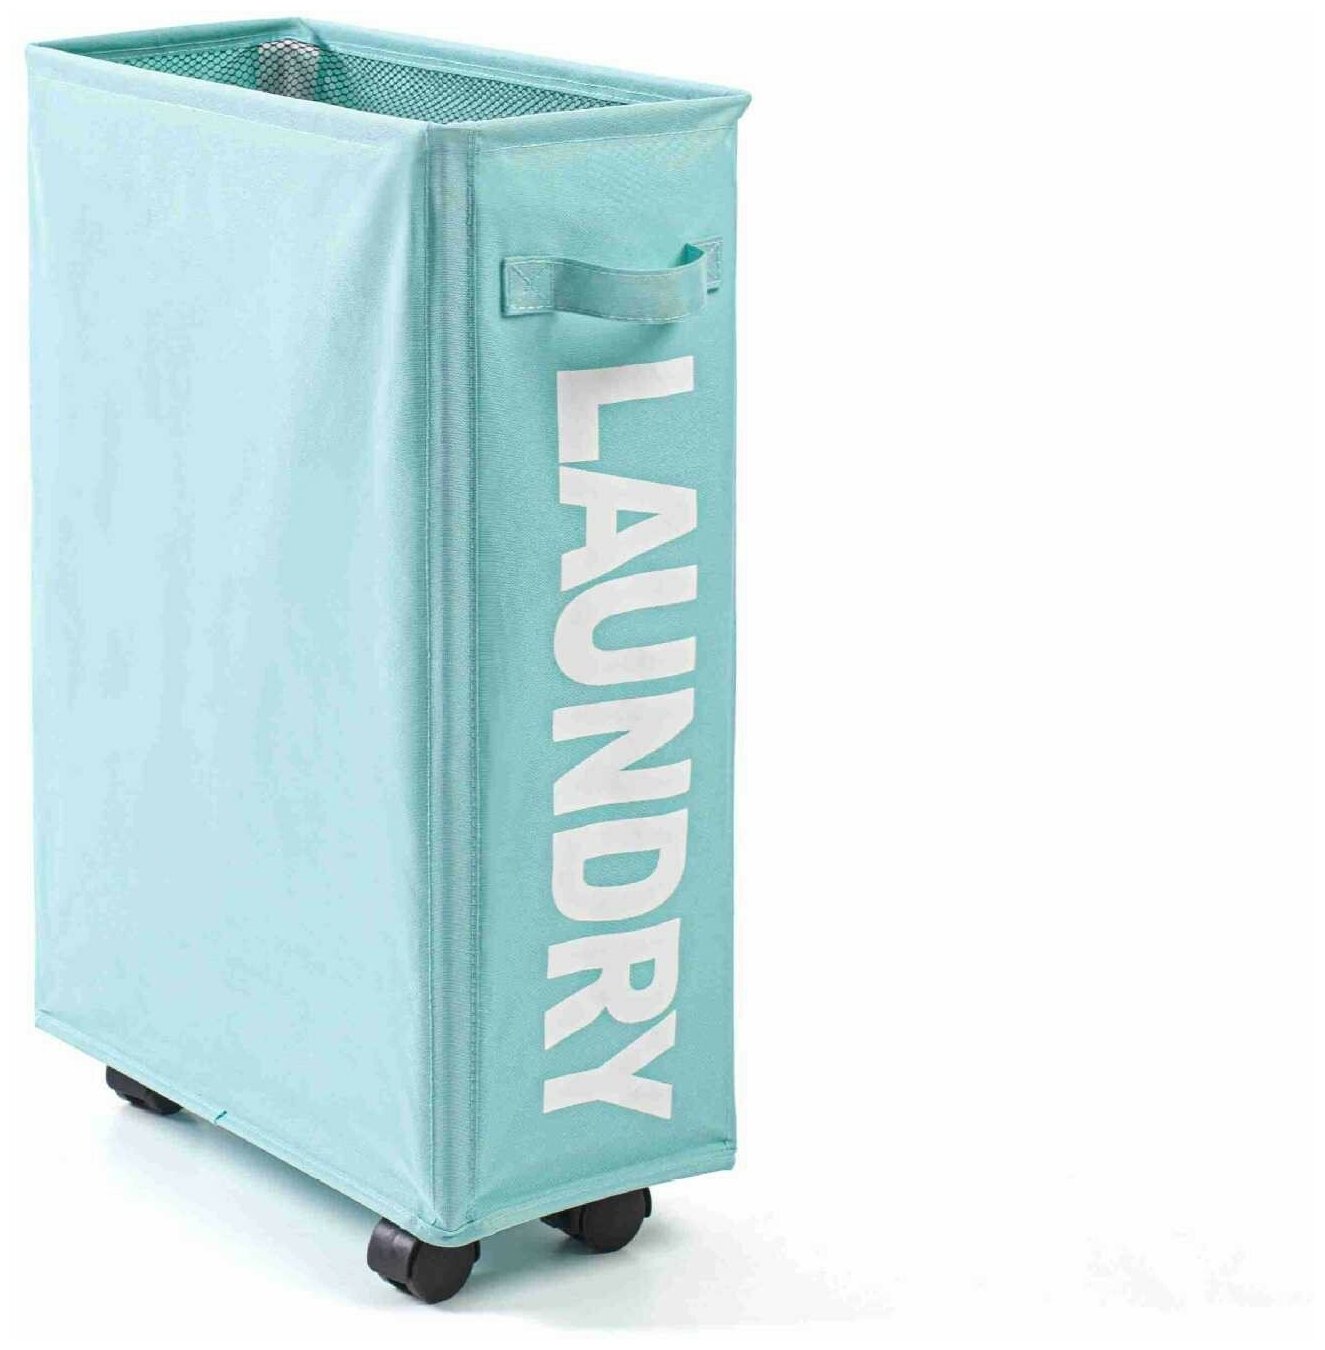 Узкая корзина для белья LAUNDRY 20 см на колесиках голубого цвета H&B Accessories - фотография № 1